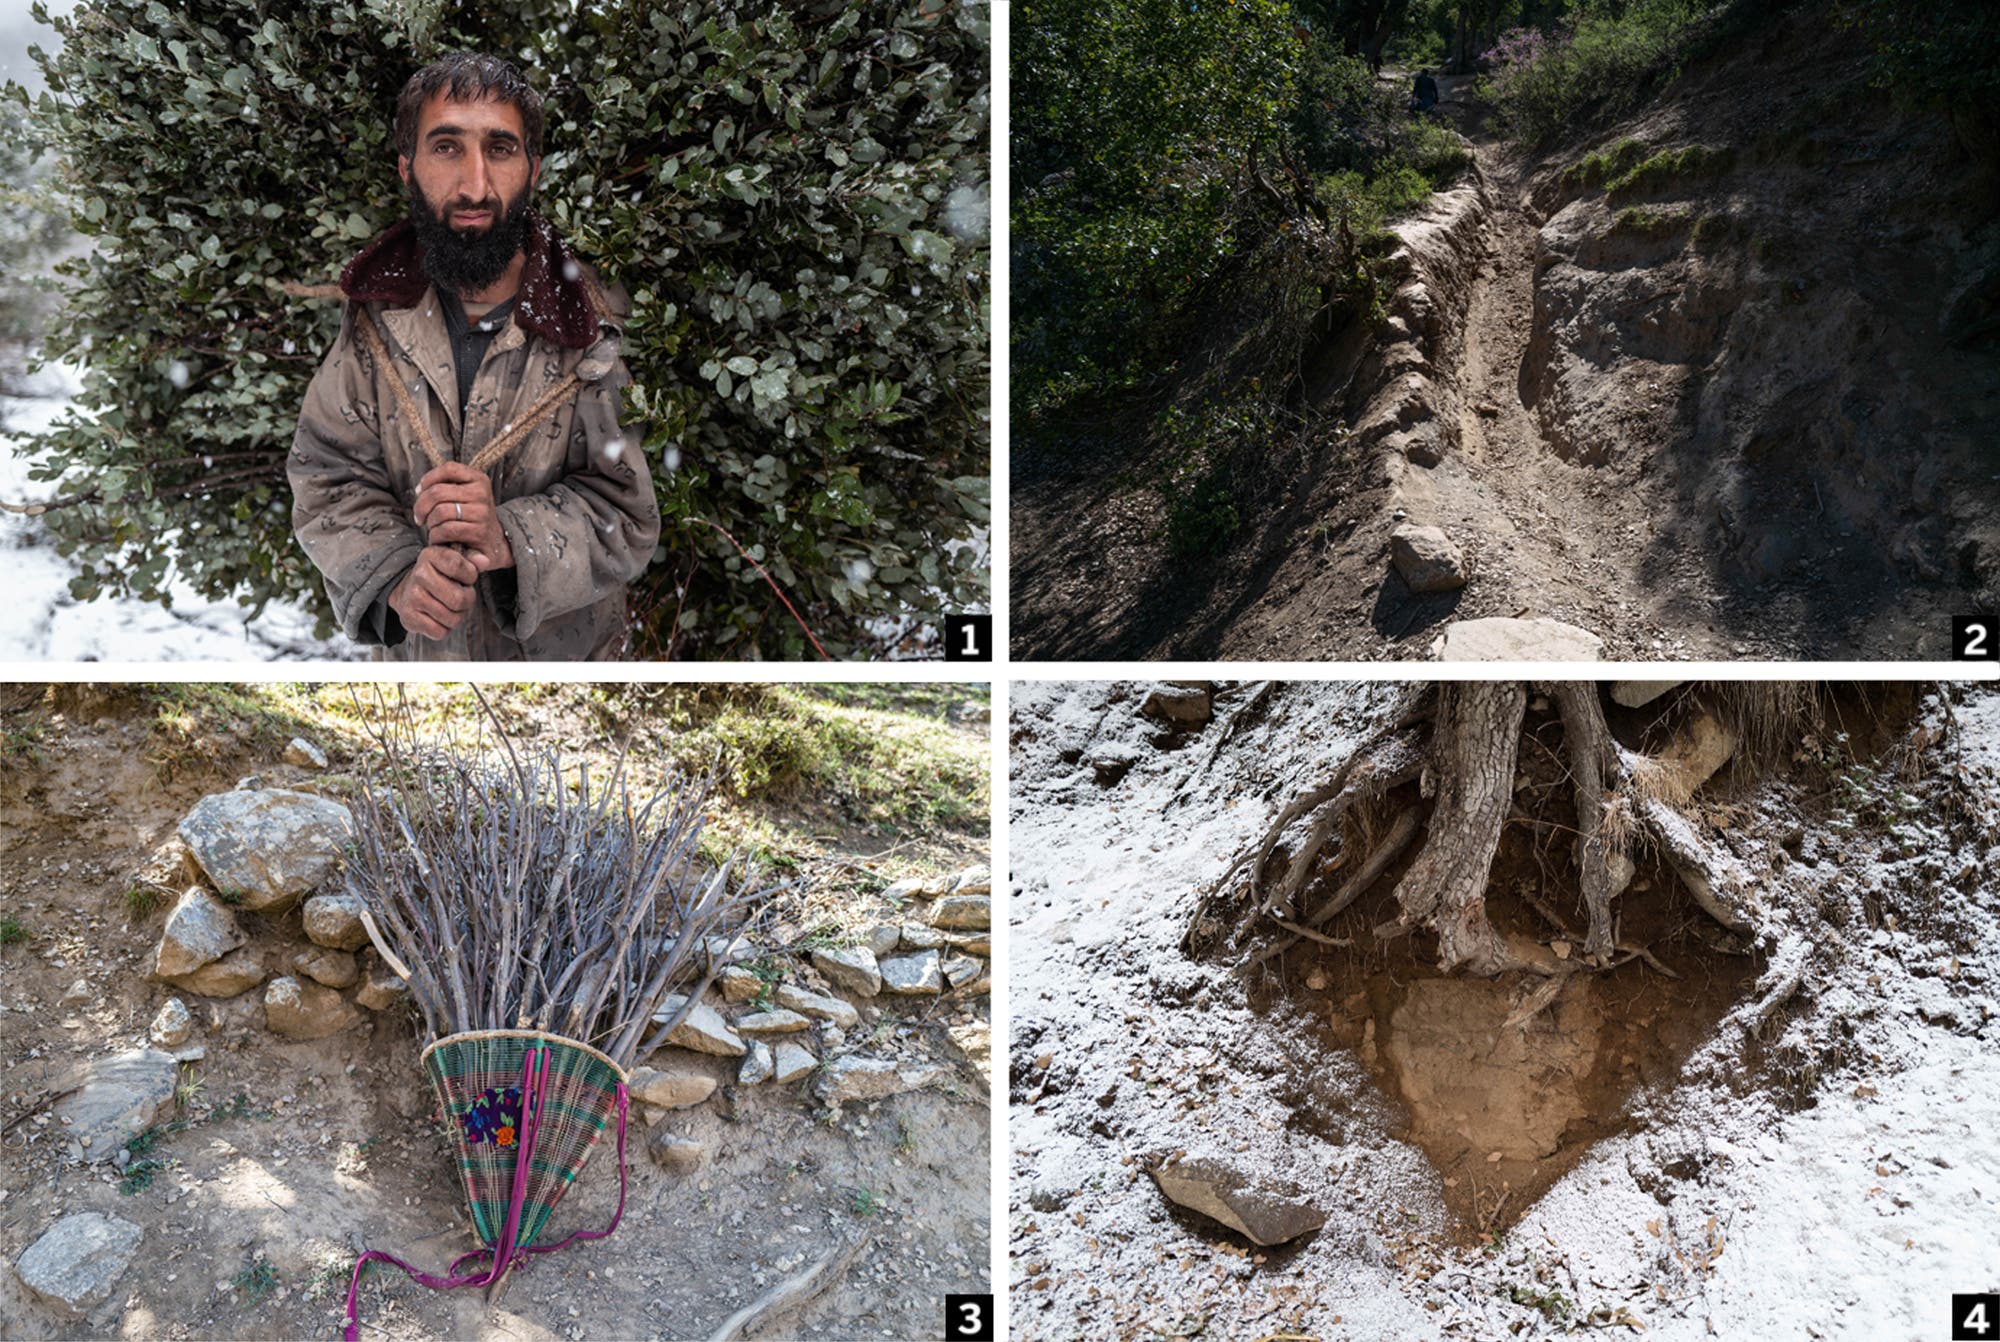 Deforestación ilegal: los bosques de Afganistán están desapareciendo